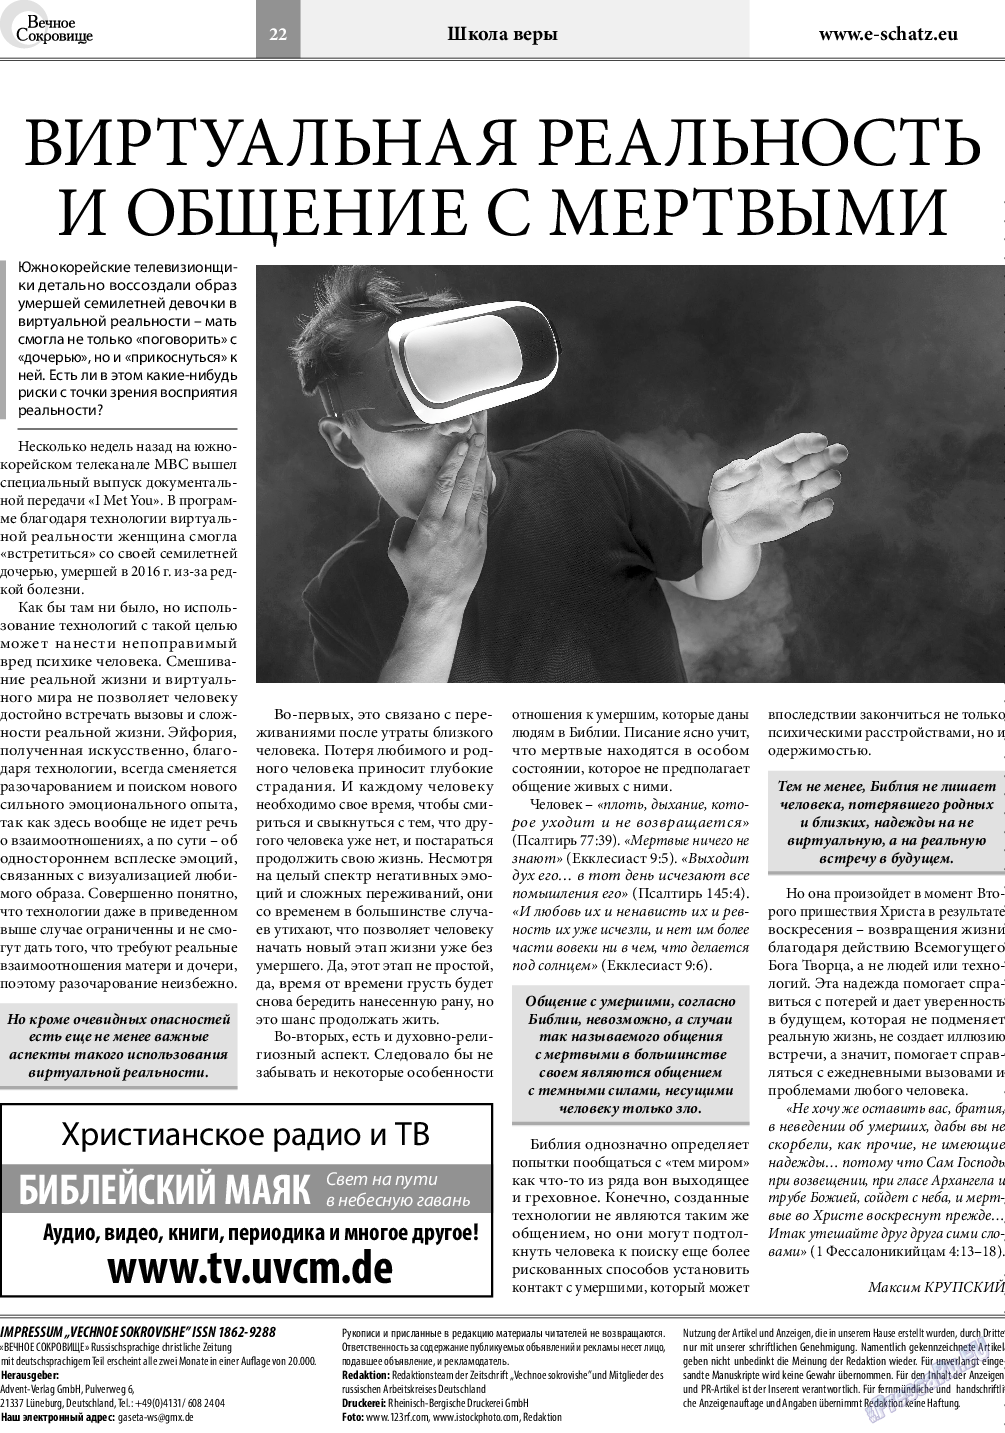 Вечное сокровище, газета. 2020 №4 стр.22